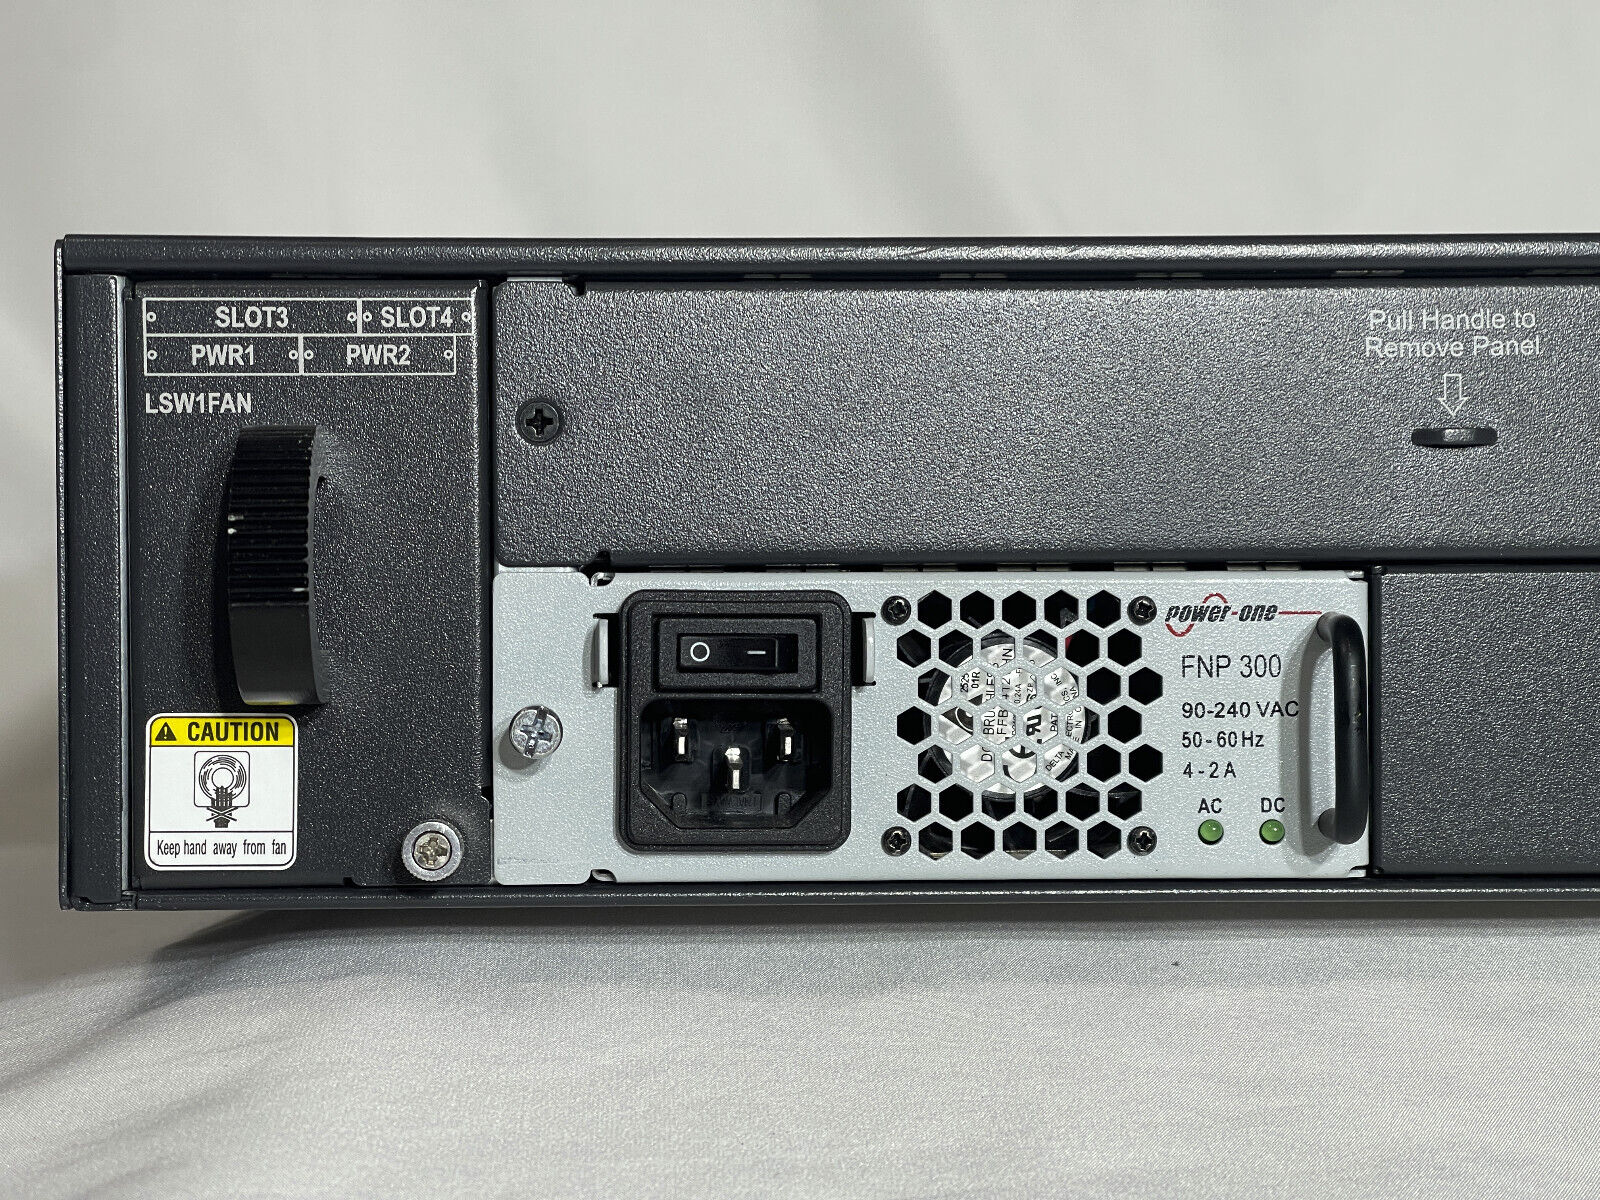 HPE JC101A FlexFabric 5800 48G POE+ 2-slot L3 Switch 48x RJ45 4x SFP Ears 1x PSU.